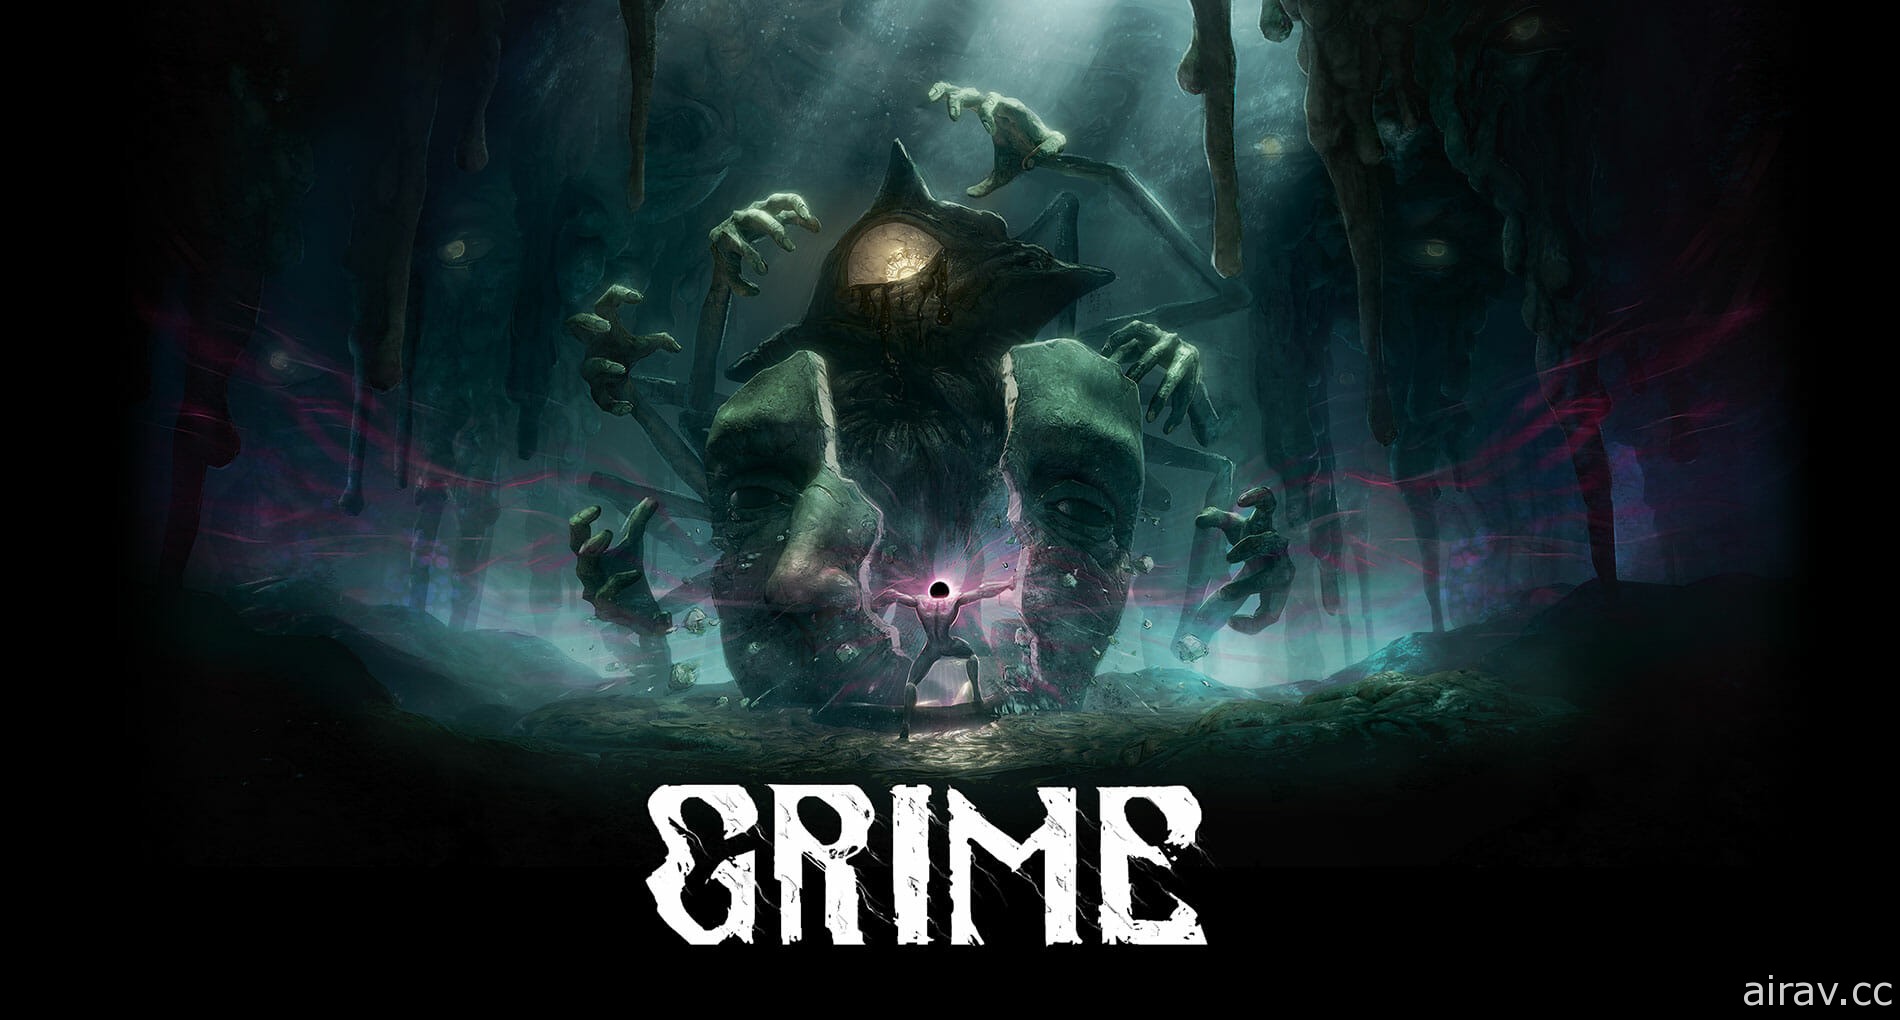 研发中动作游戏《尘埃异变 GRIME》释出新战斗特色展示影片